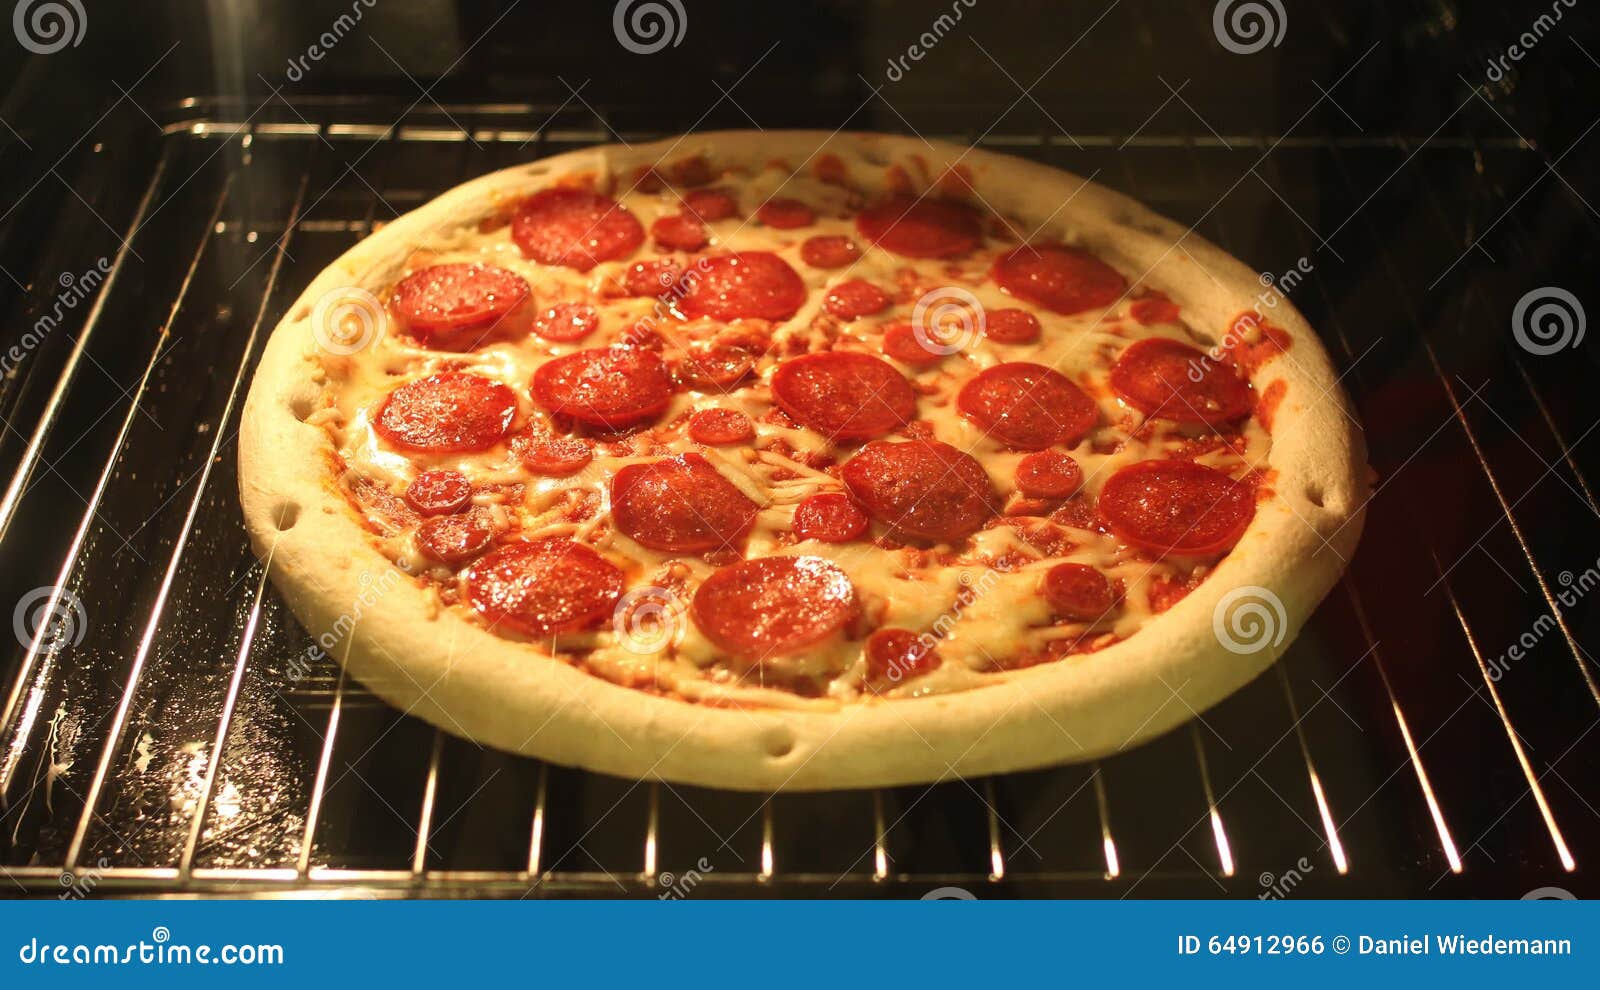 можно ли на фольге печь пиццу в духовке фото 81